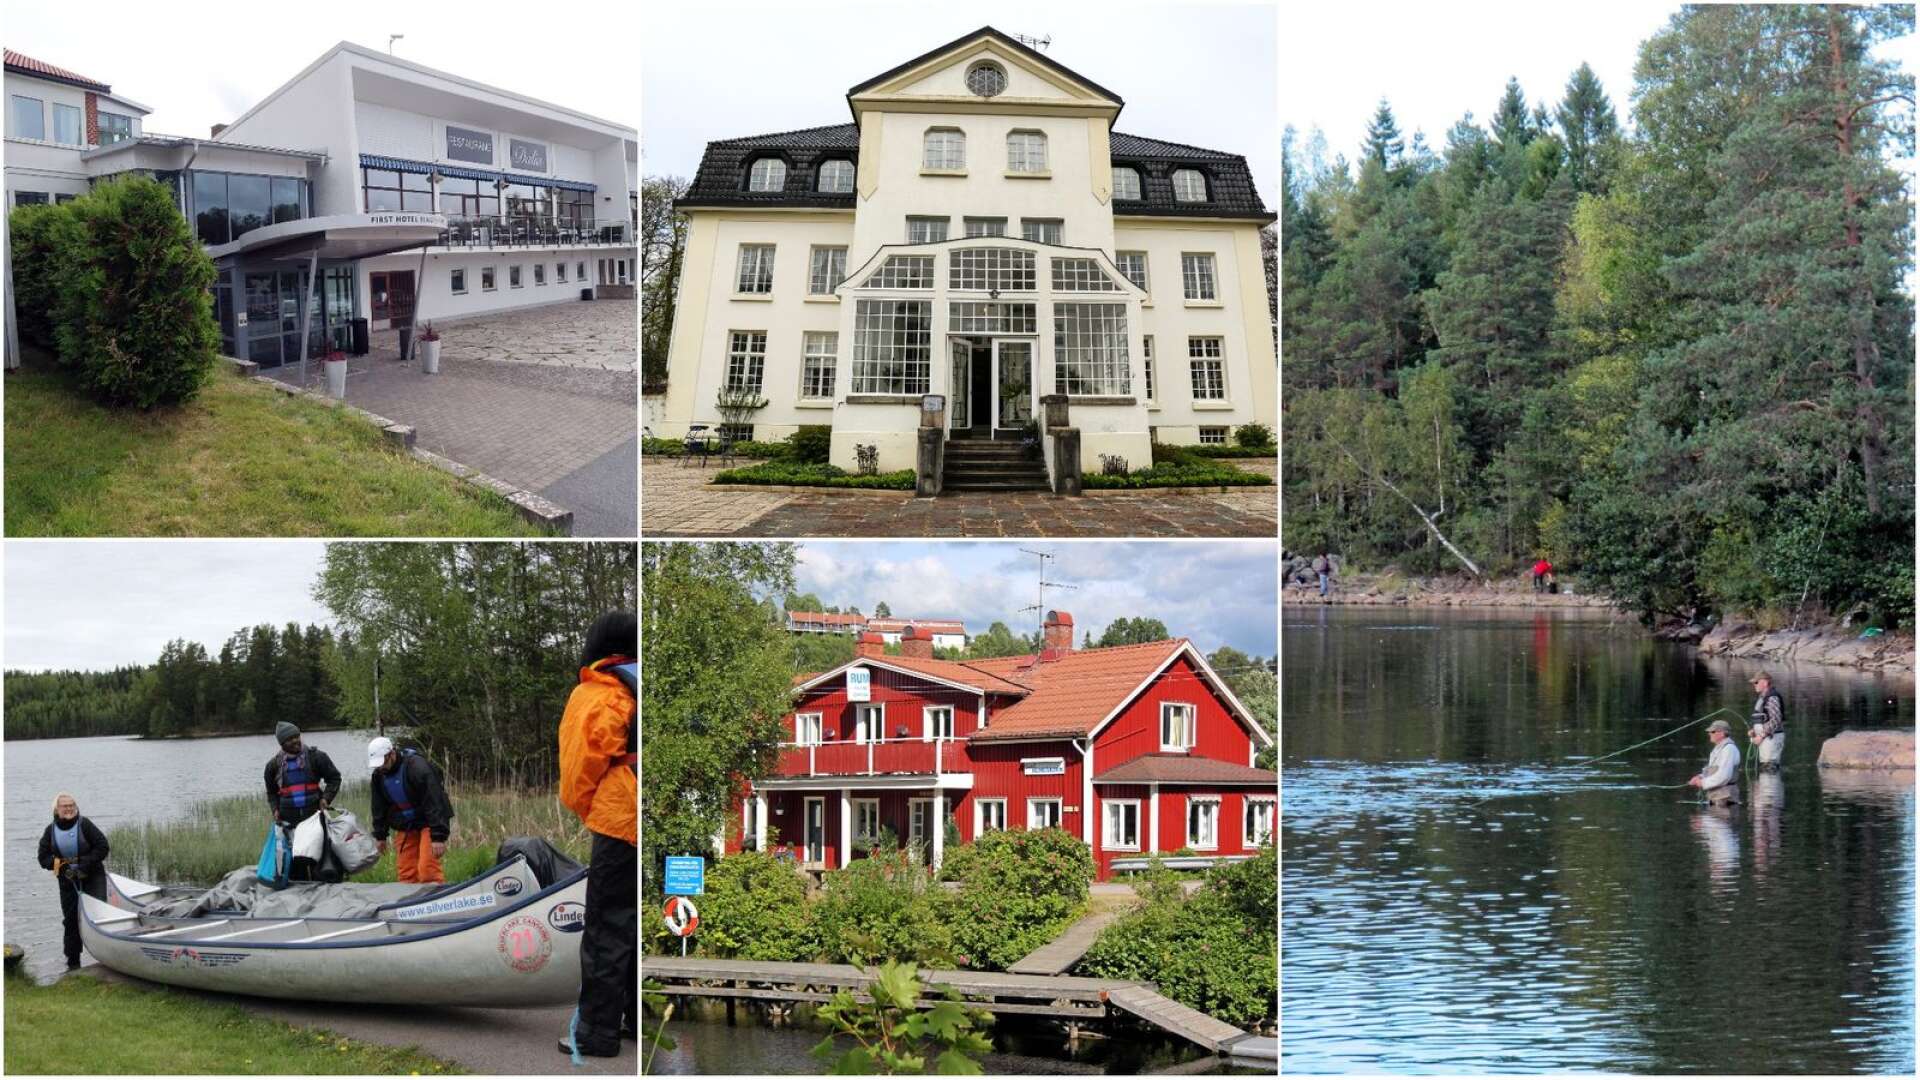 Hotellen i Dalsland har varit fullbelagda och nya turistgrupper har hittat till landskapet i sommar.